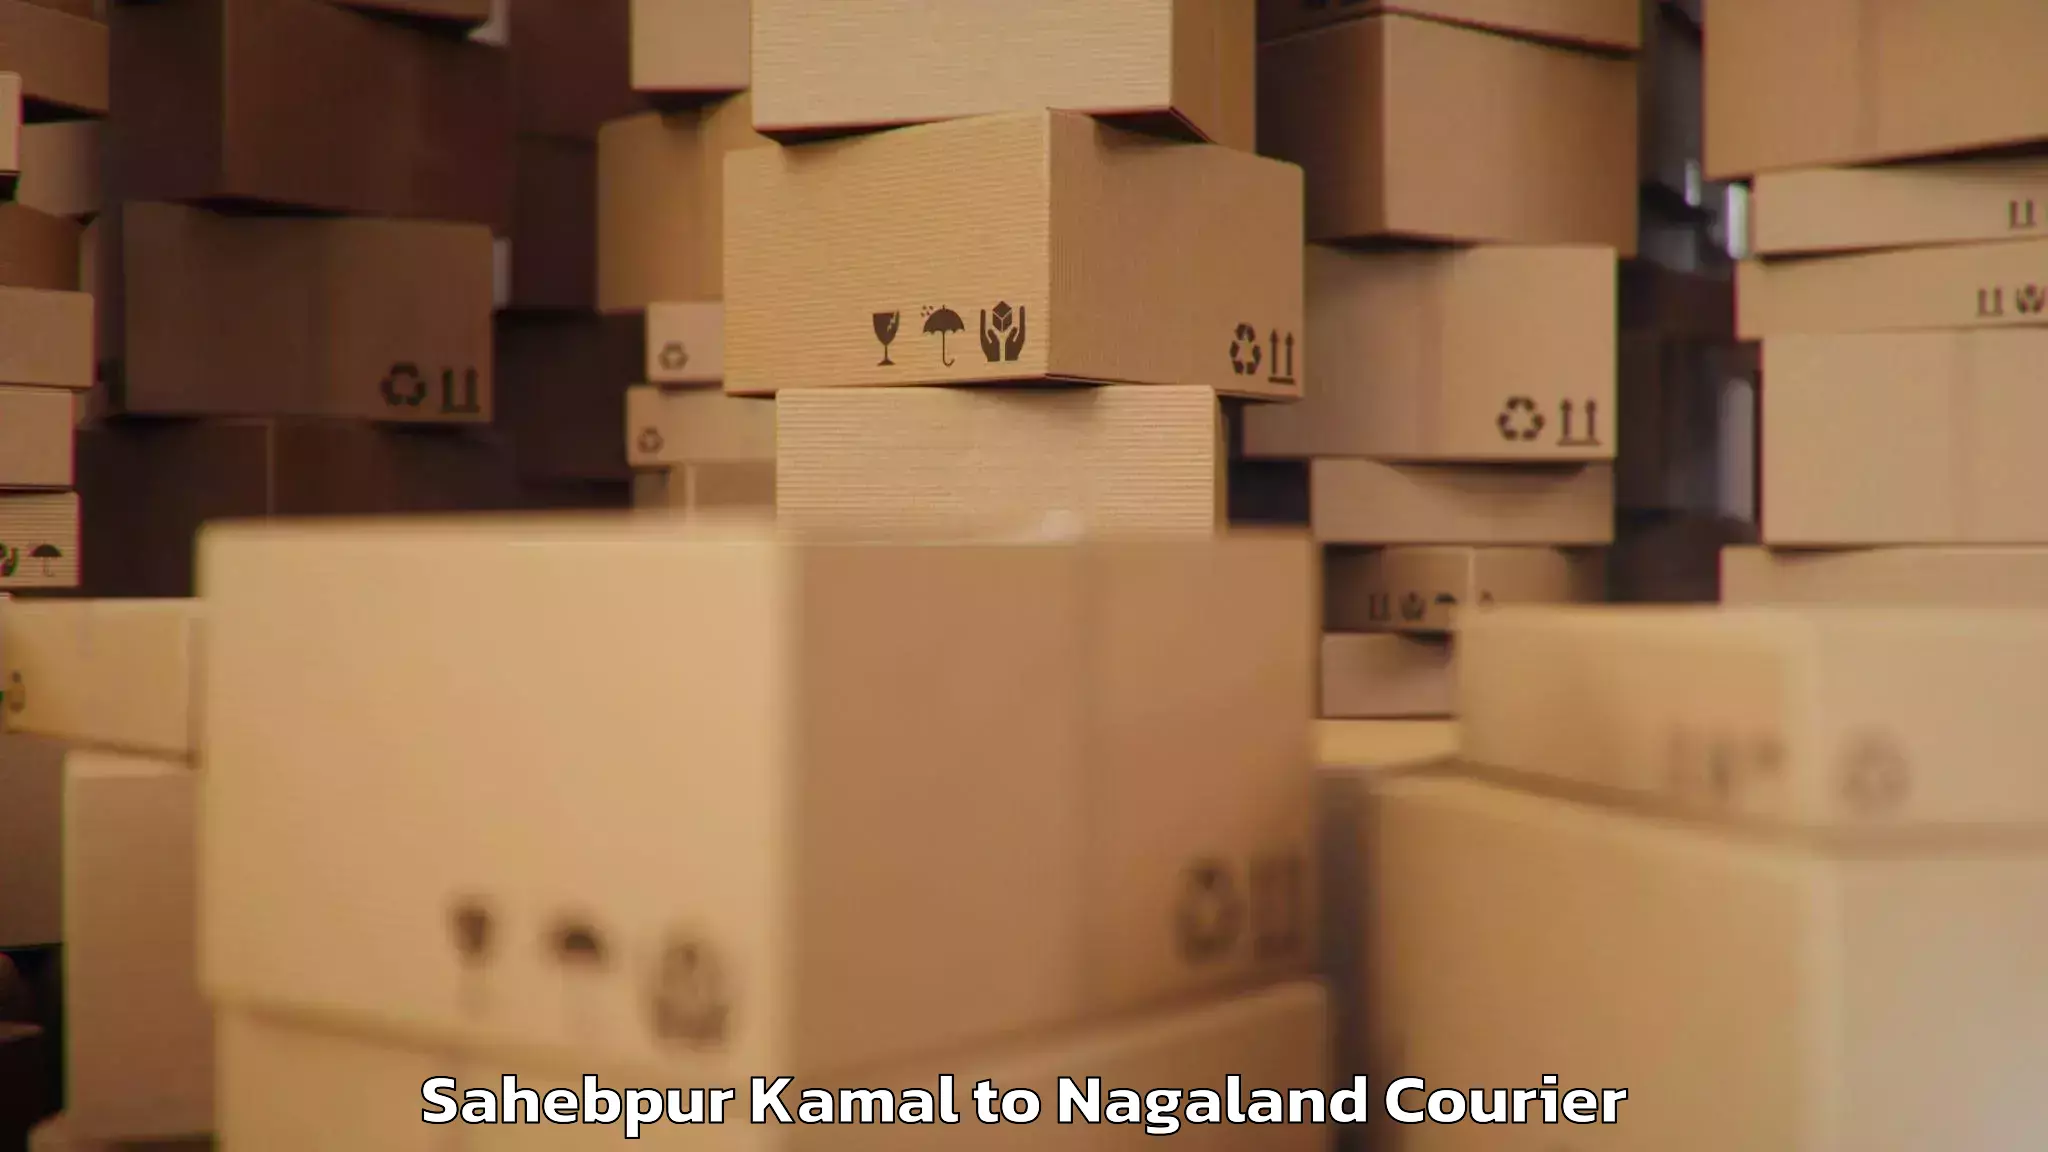 Luggage forwarding service Sahebpur Kamal to Kohima